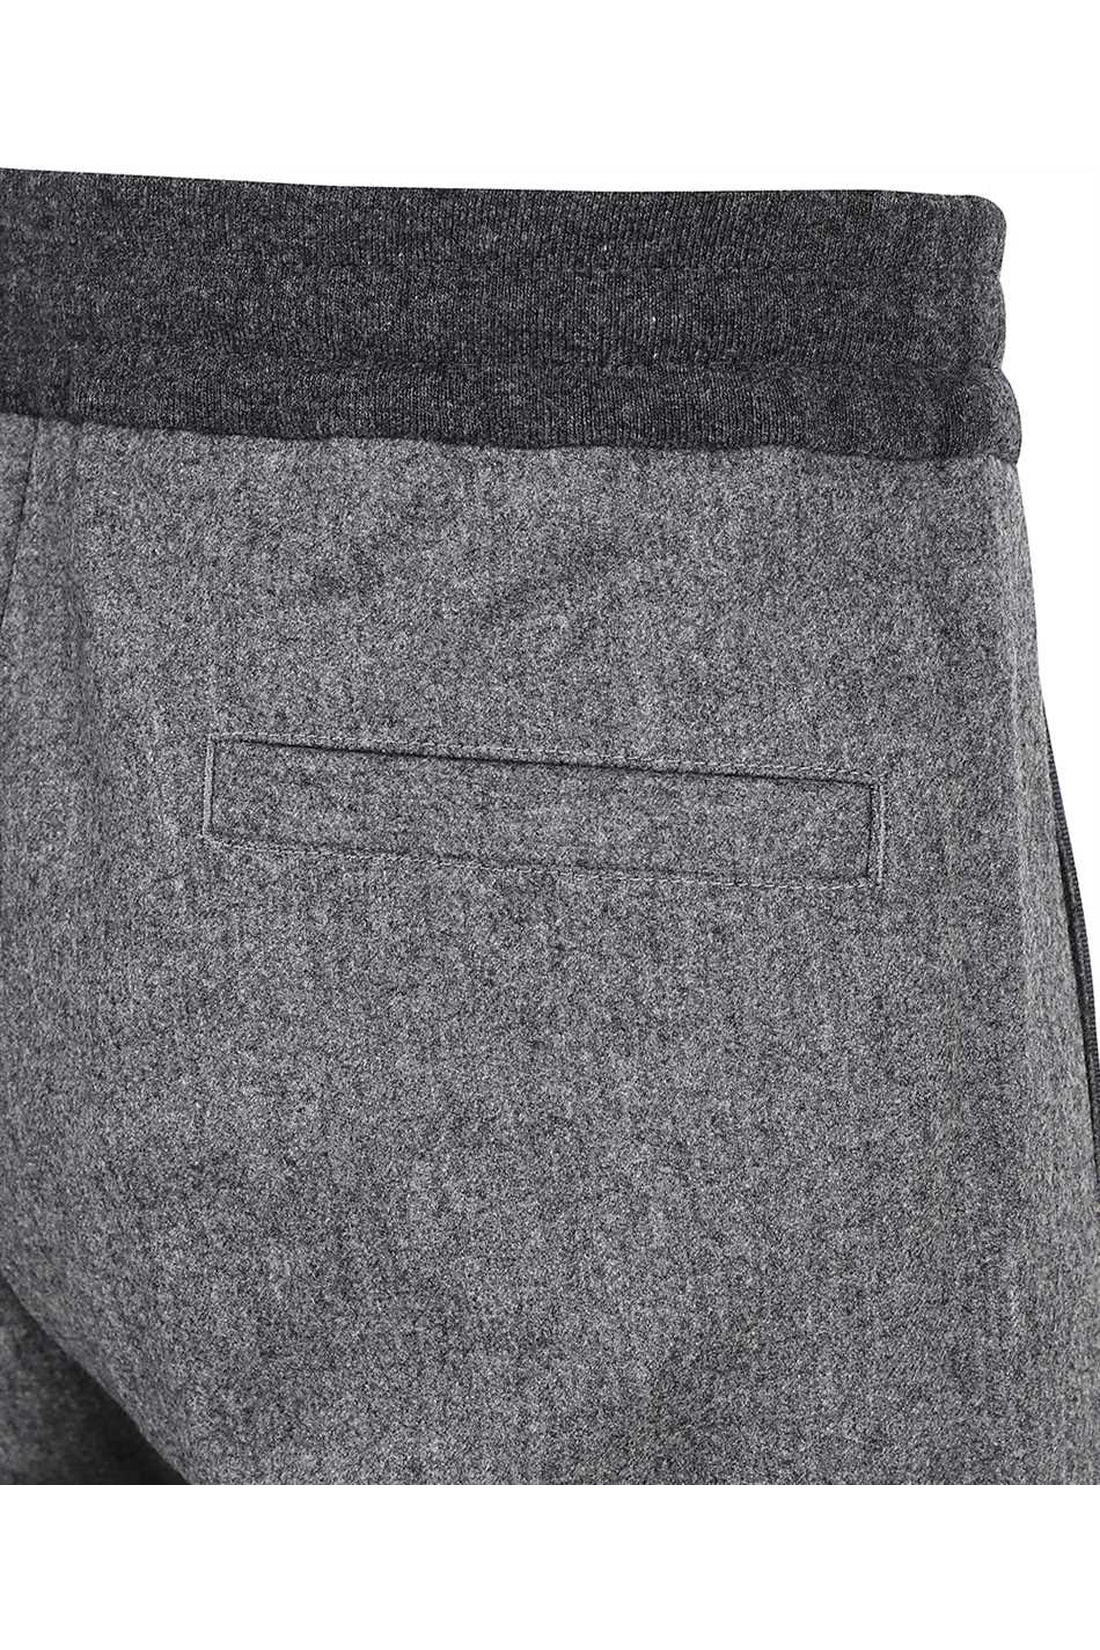 Moncler-OUTLET-SALE-Wool track pants-ARCHIVIST